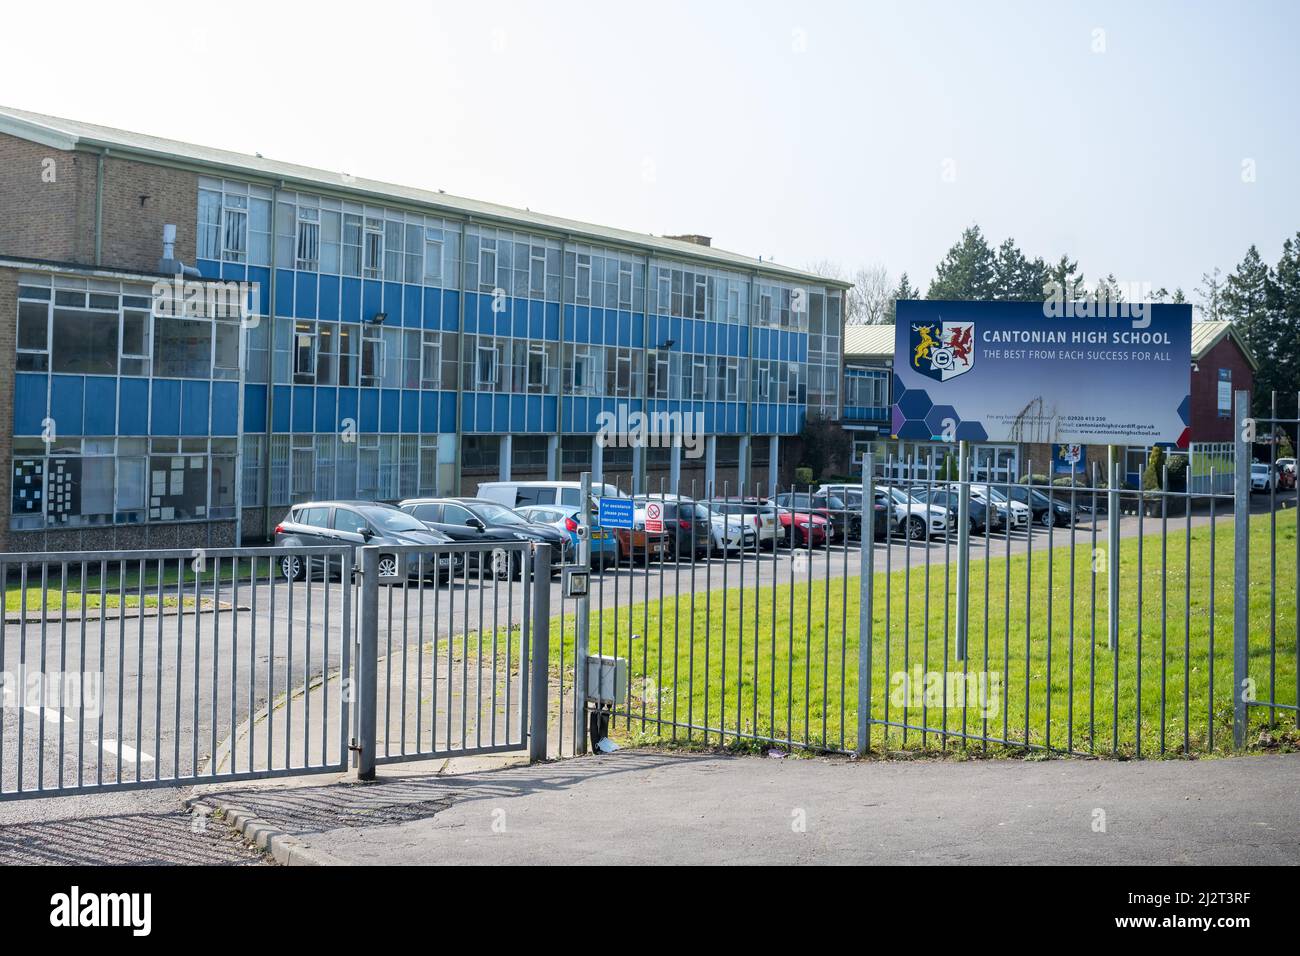 Una vista exterior de Cantonian High School en Cardiff, Gales, Reino Unido. Foto de stock